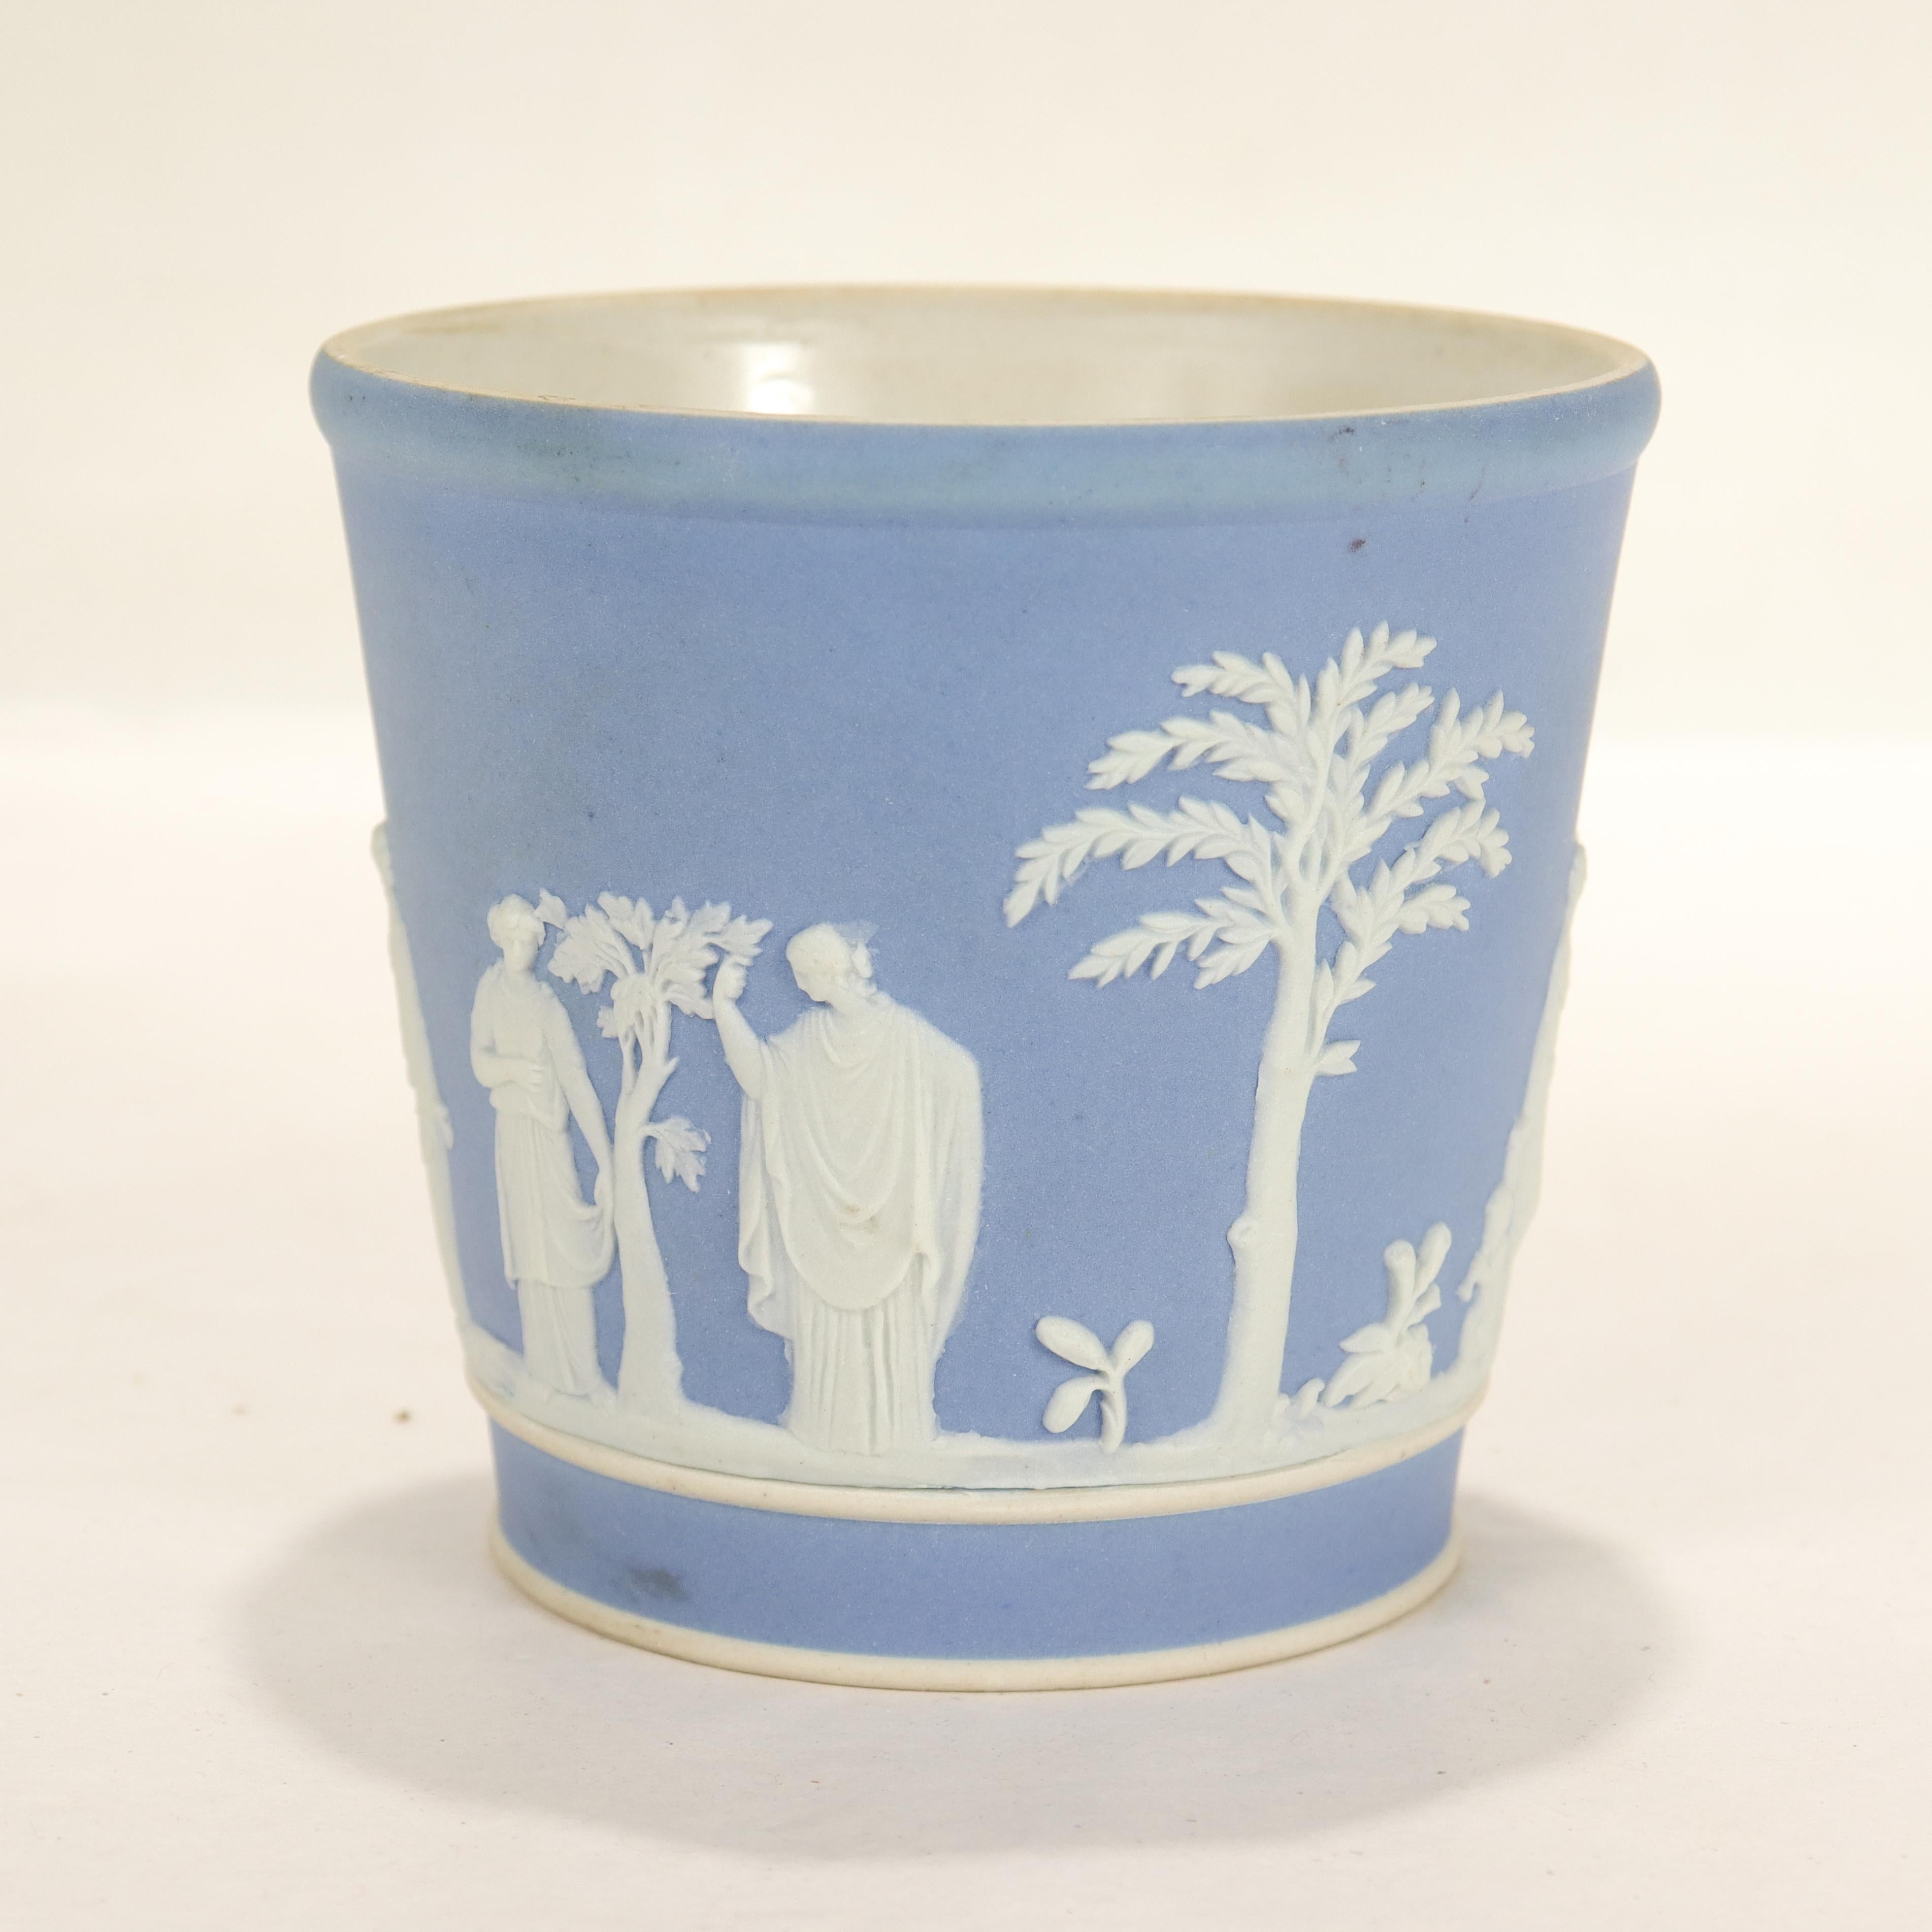 Ein feiner antiker Becher oder eine Tasse aus Jaspis.

In Wedgwood-Blau mit weißem Reliefdekor, das Männer, Frauen, Kinder und Bäume im klassizistischen Stil darstellt.

Wir nehmen an, dass es als Becher oder Trinkgefäß verwendet